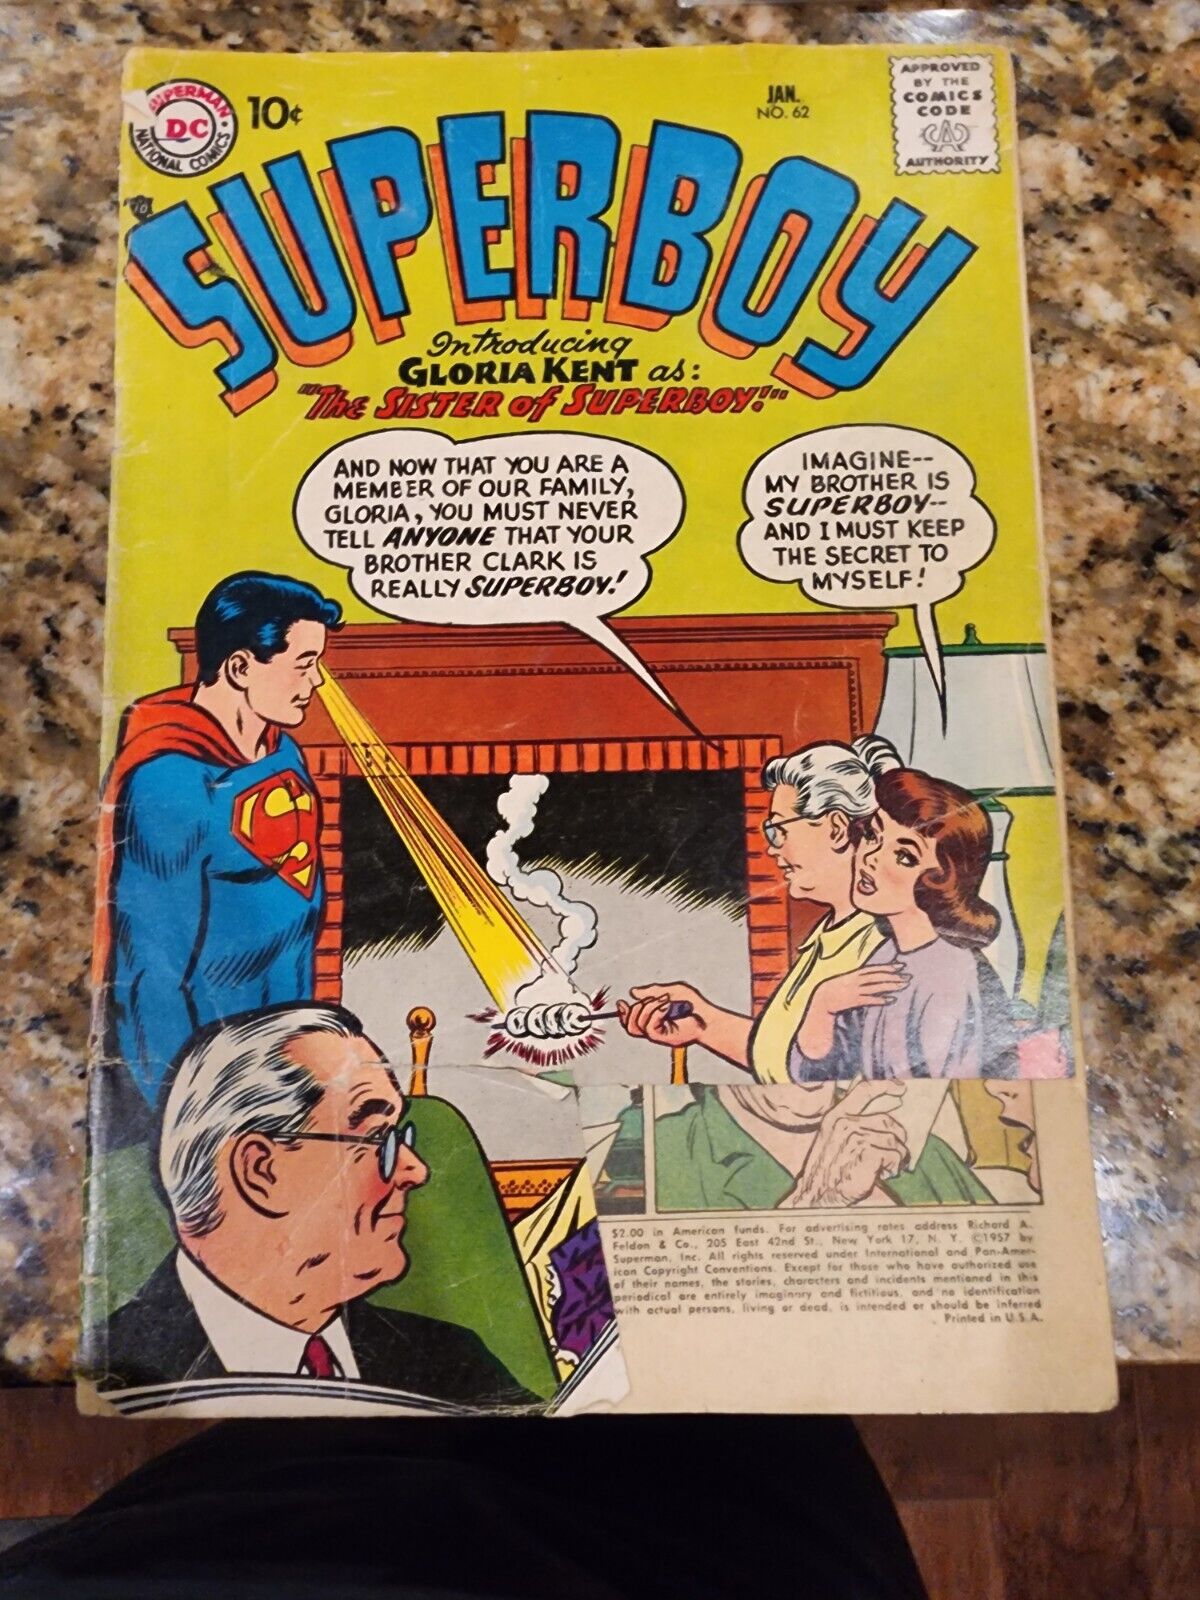 Superboy #62  Jan 1958